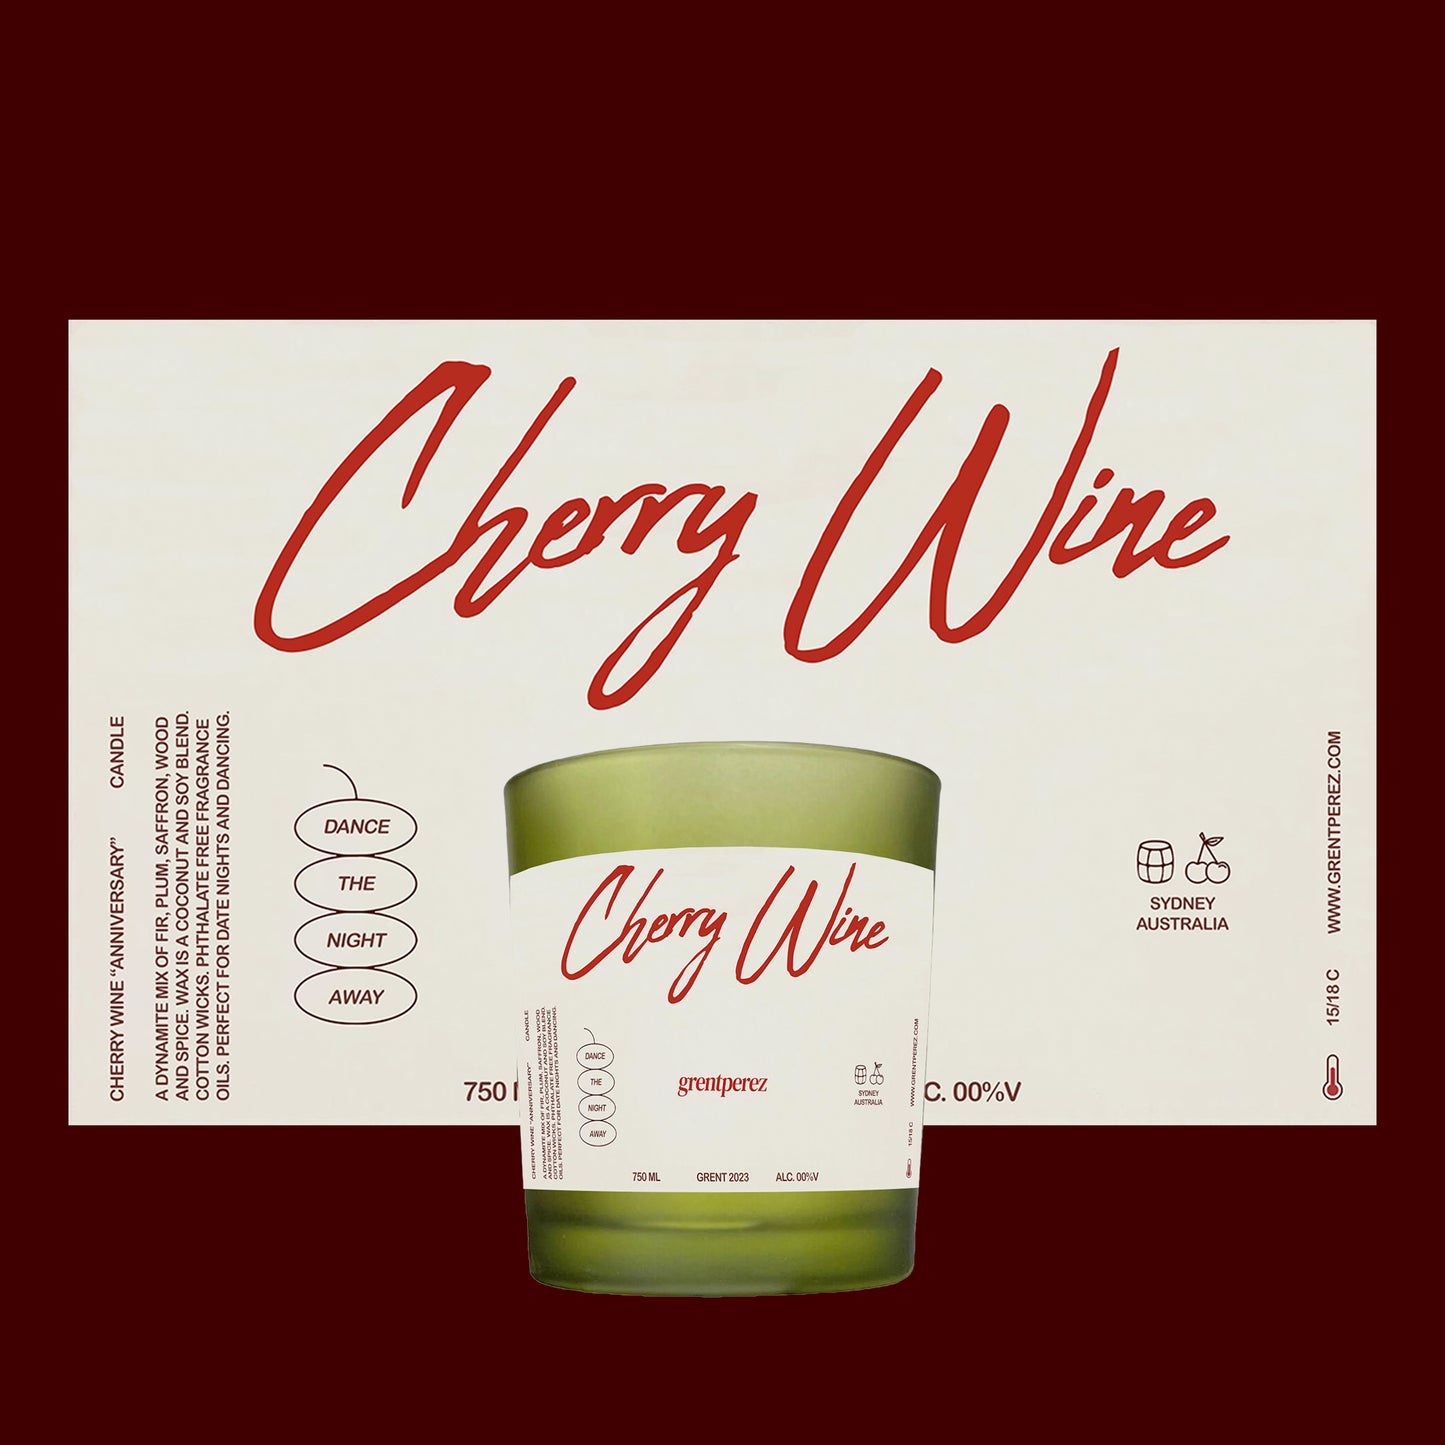 Cherry Wine “Anniversary” Candle